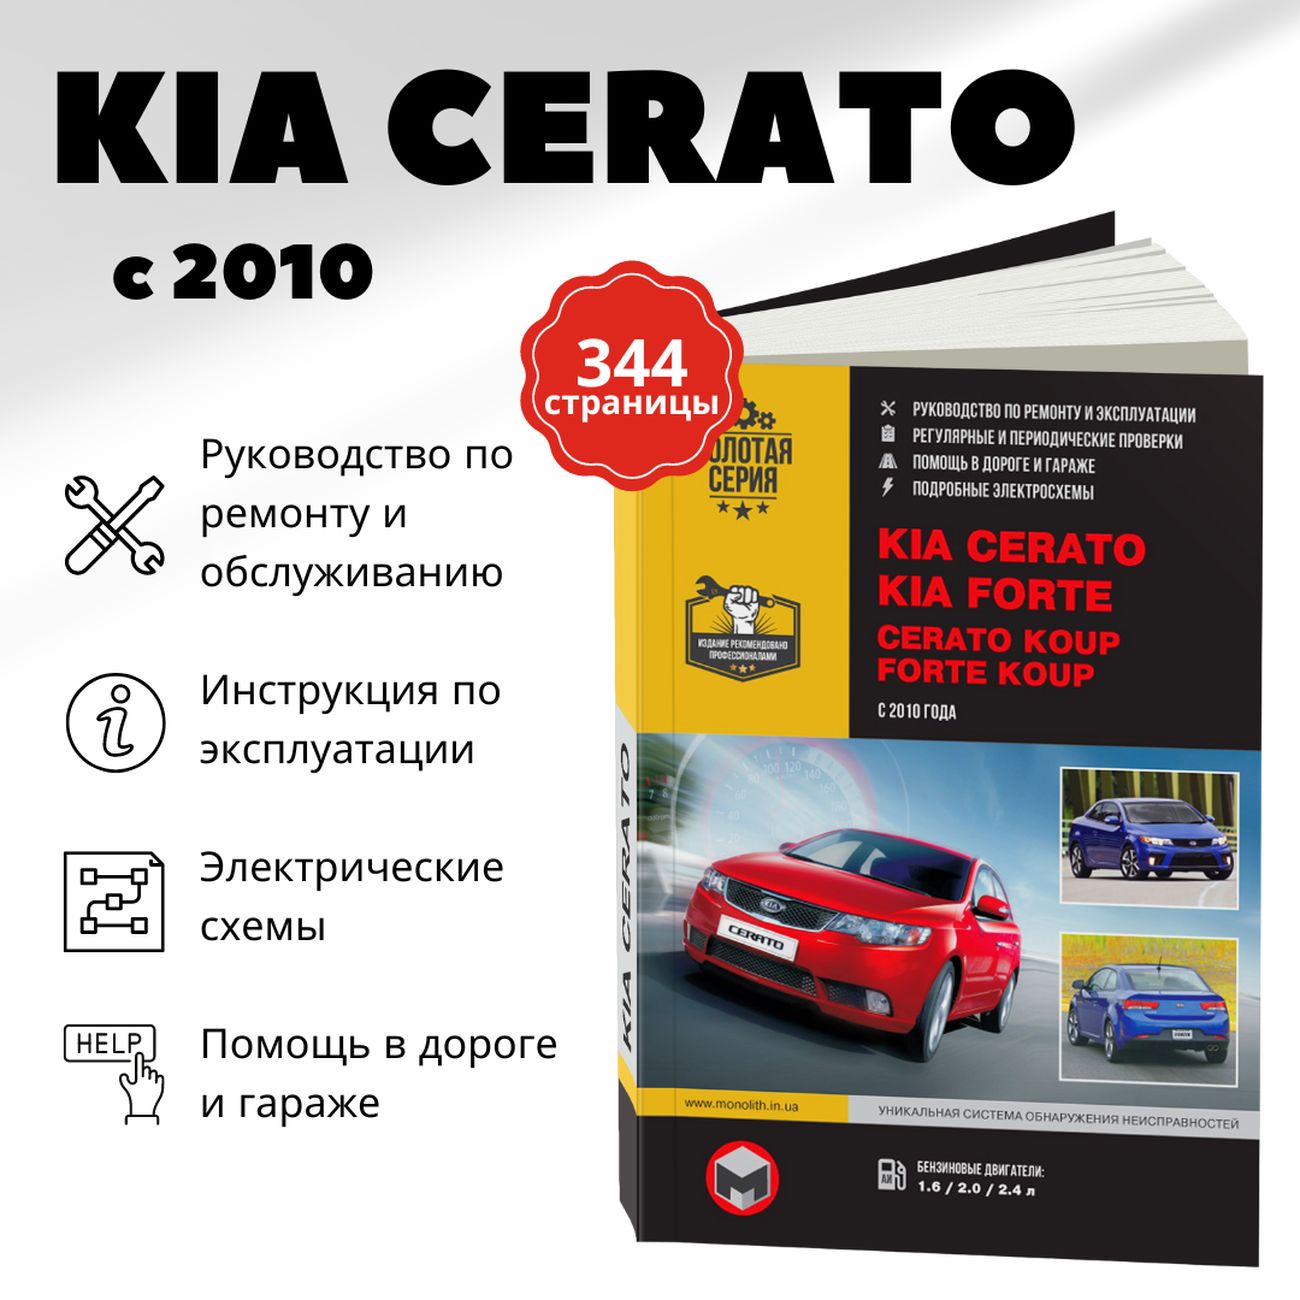 Книга:KiaCerato/Forte(КиаЦерато/Форте)бензинс2010г.в.-подробноеруководствопотехническомуобслуживаниюиремонту,инструкцияпоэксплуатации,электрическиесхемы,978-617-577-094-8,издательствоМонолит